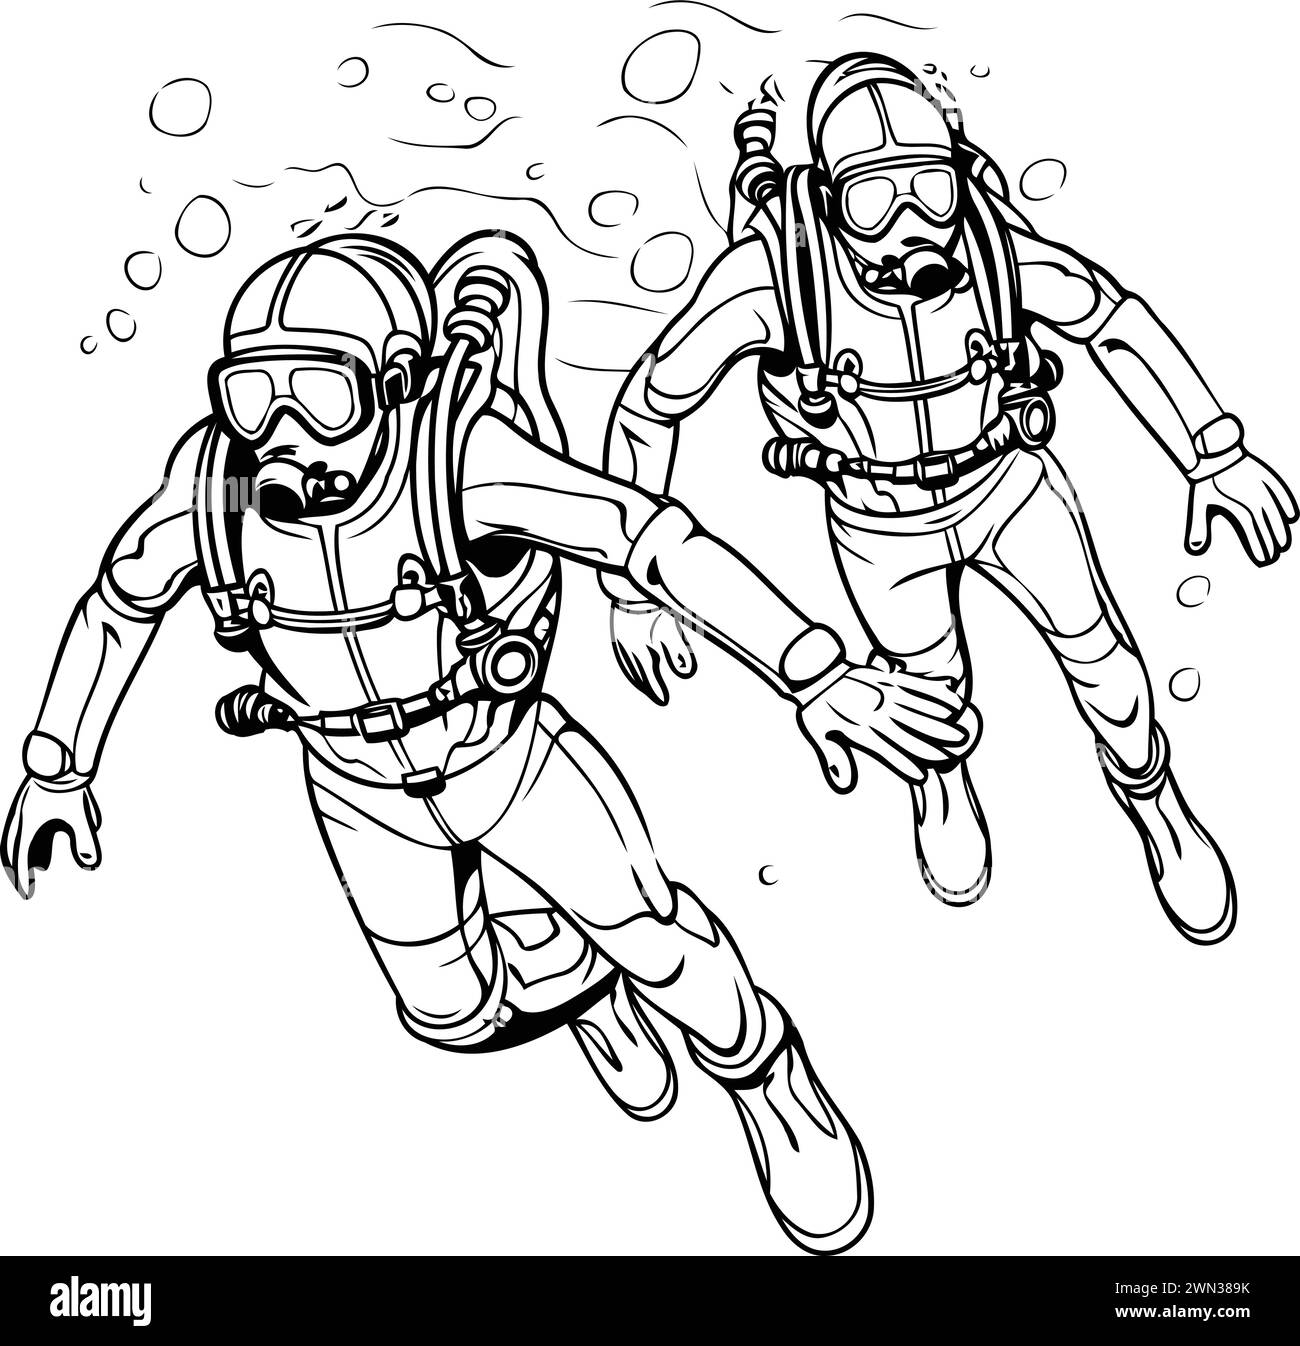 Uomini subacquei. Illustrazione vettoriale in bianco e nero per il libro da colorare. Illustrazione Vettoriale